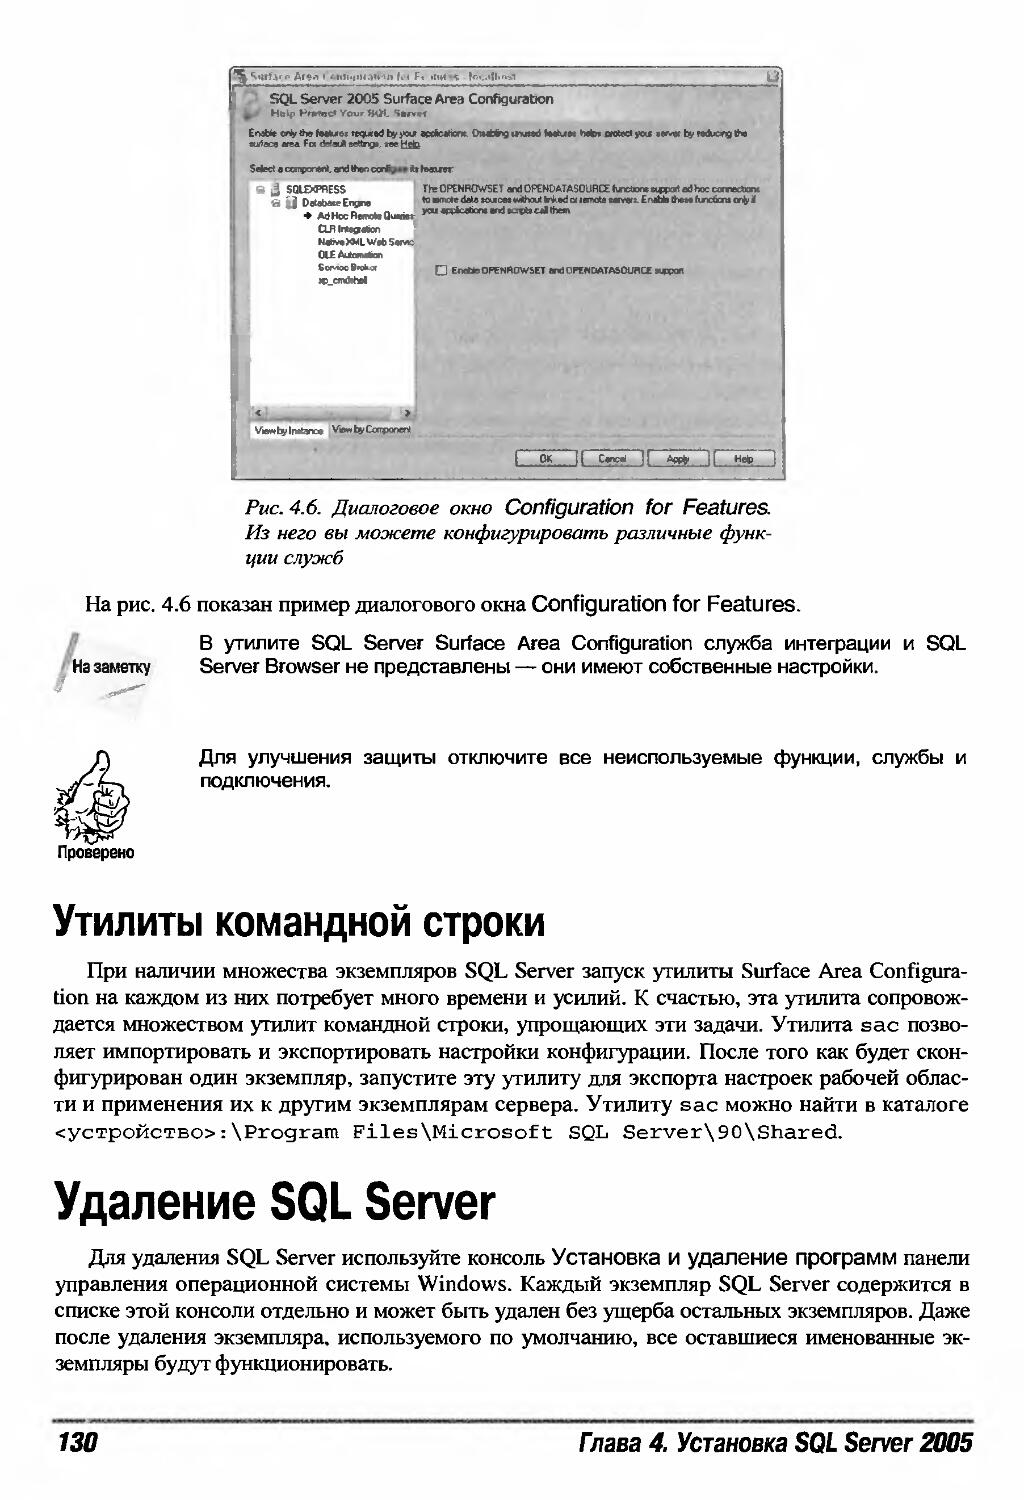 Удаление SQL Server